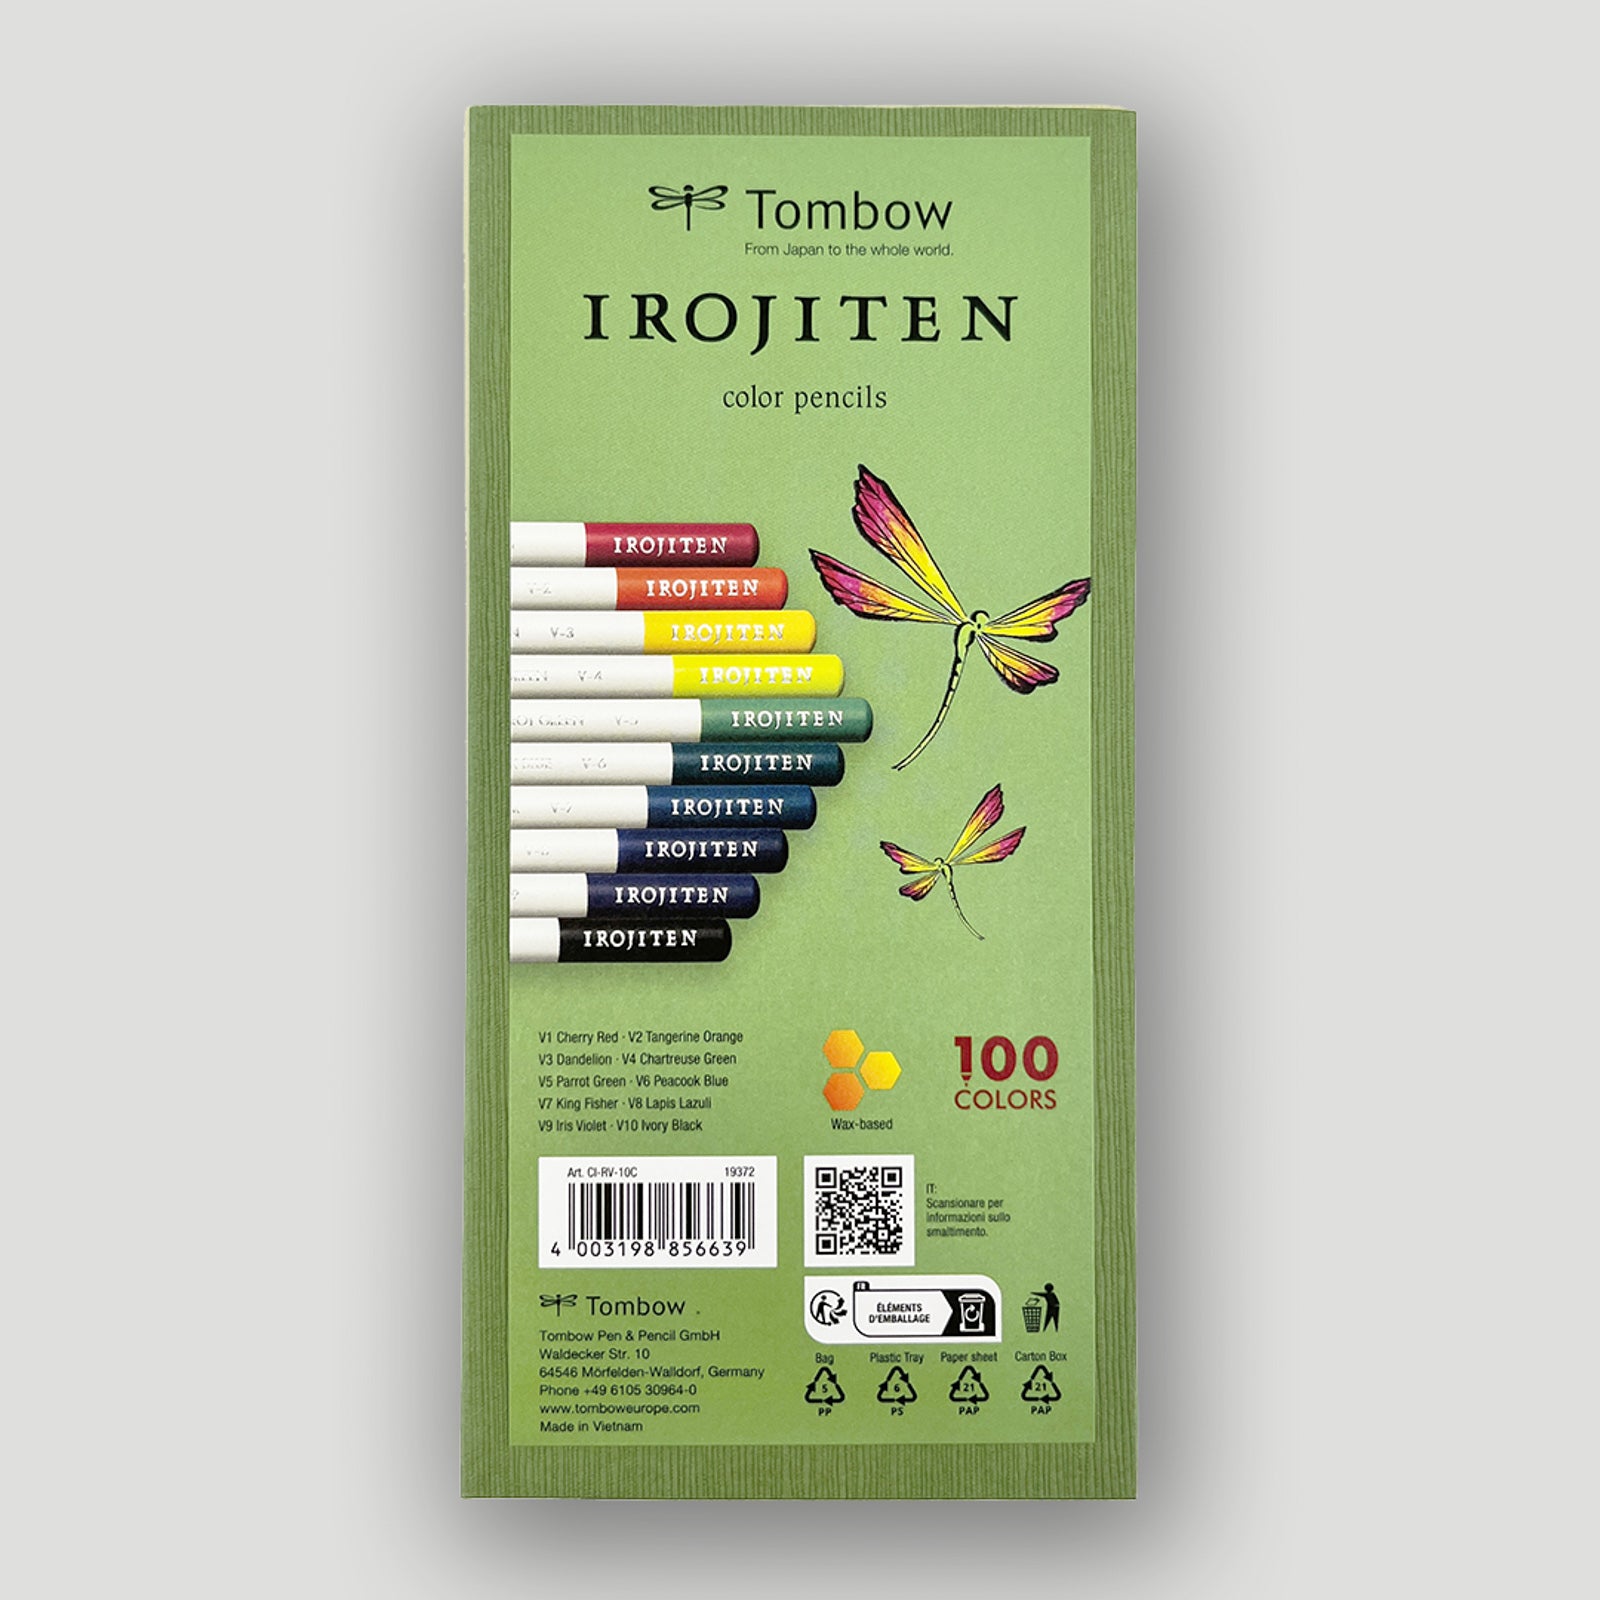 Tombow Irojiten set volume 2: Vivid tone l10 colors